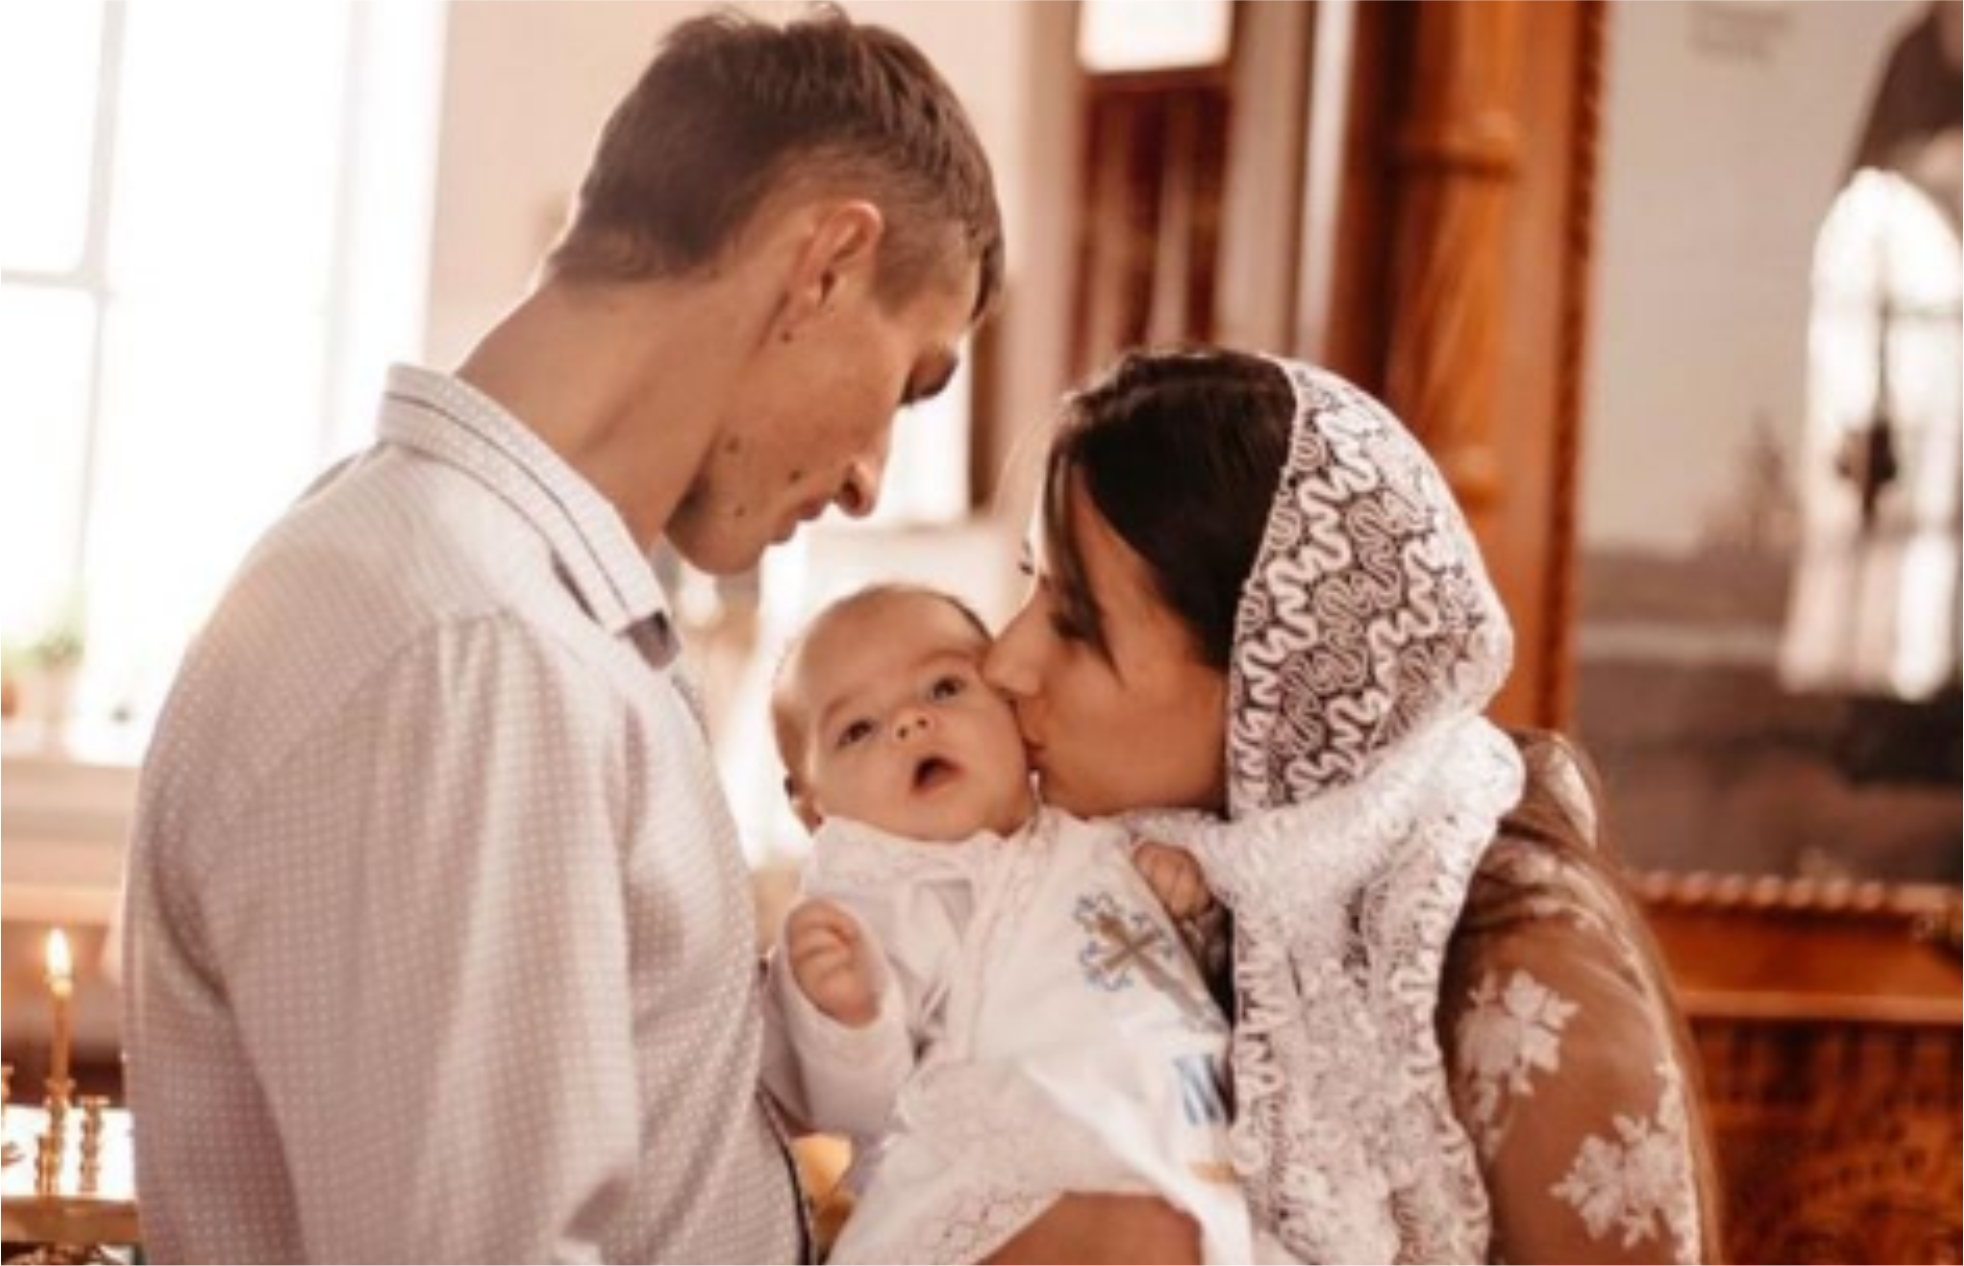 Можно быть крестным 2 раза. Обязанности крёстных родителей. Обязанности крестной мамы в жизни ребенка.